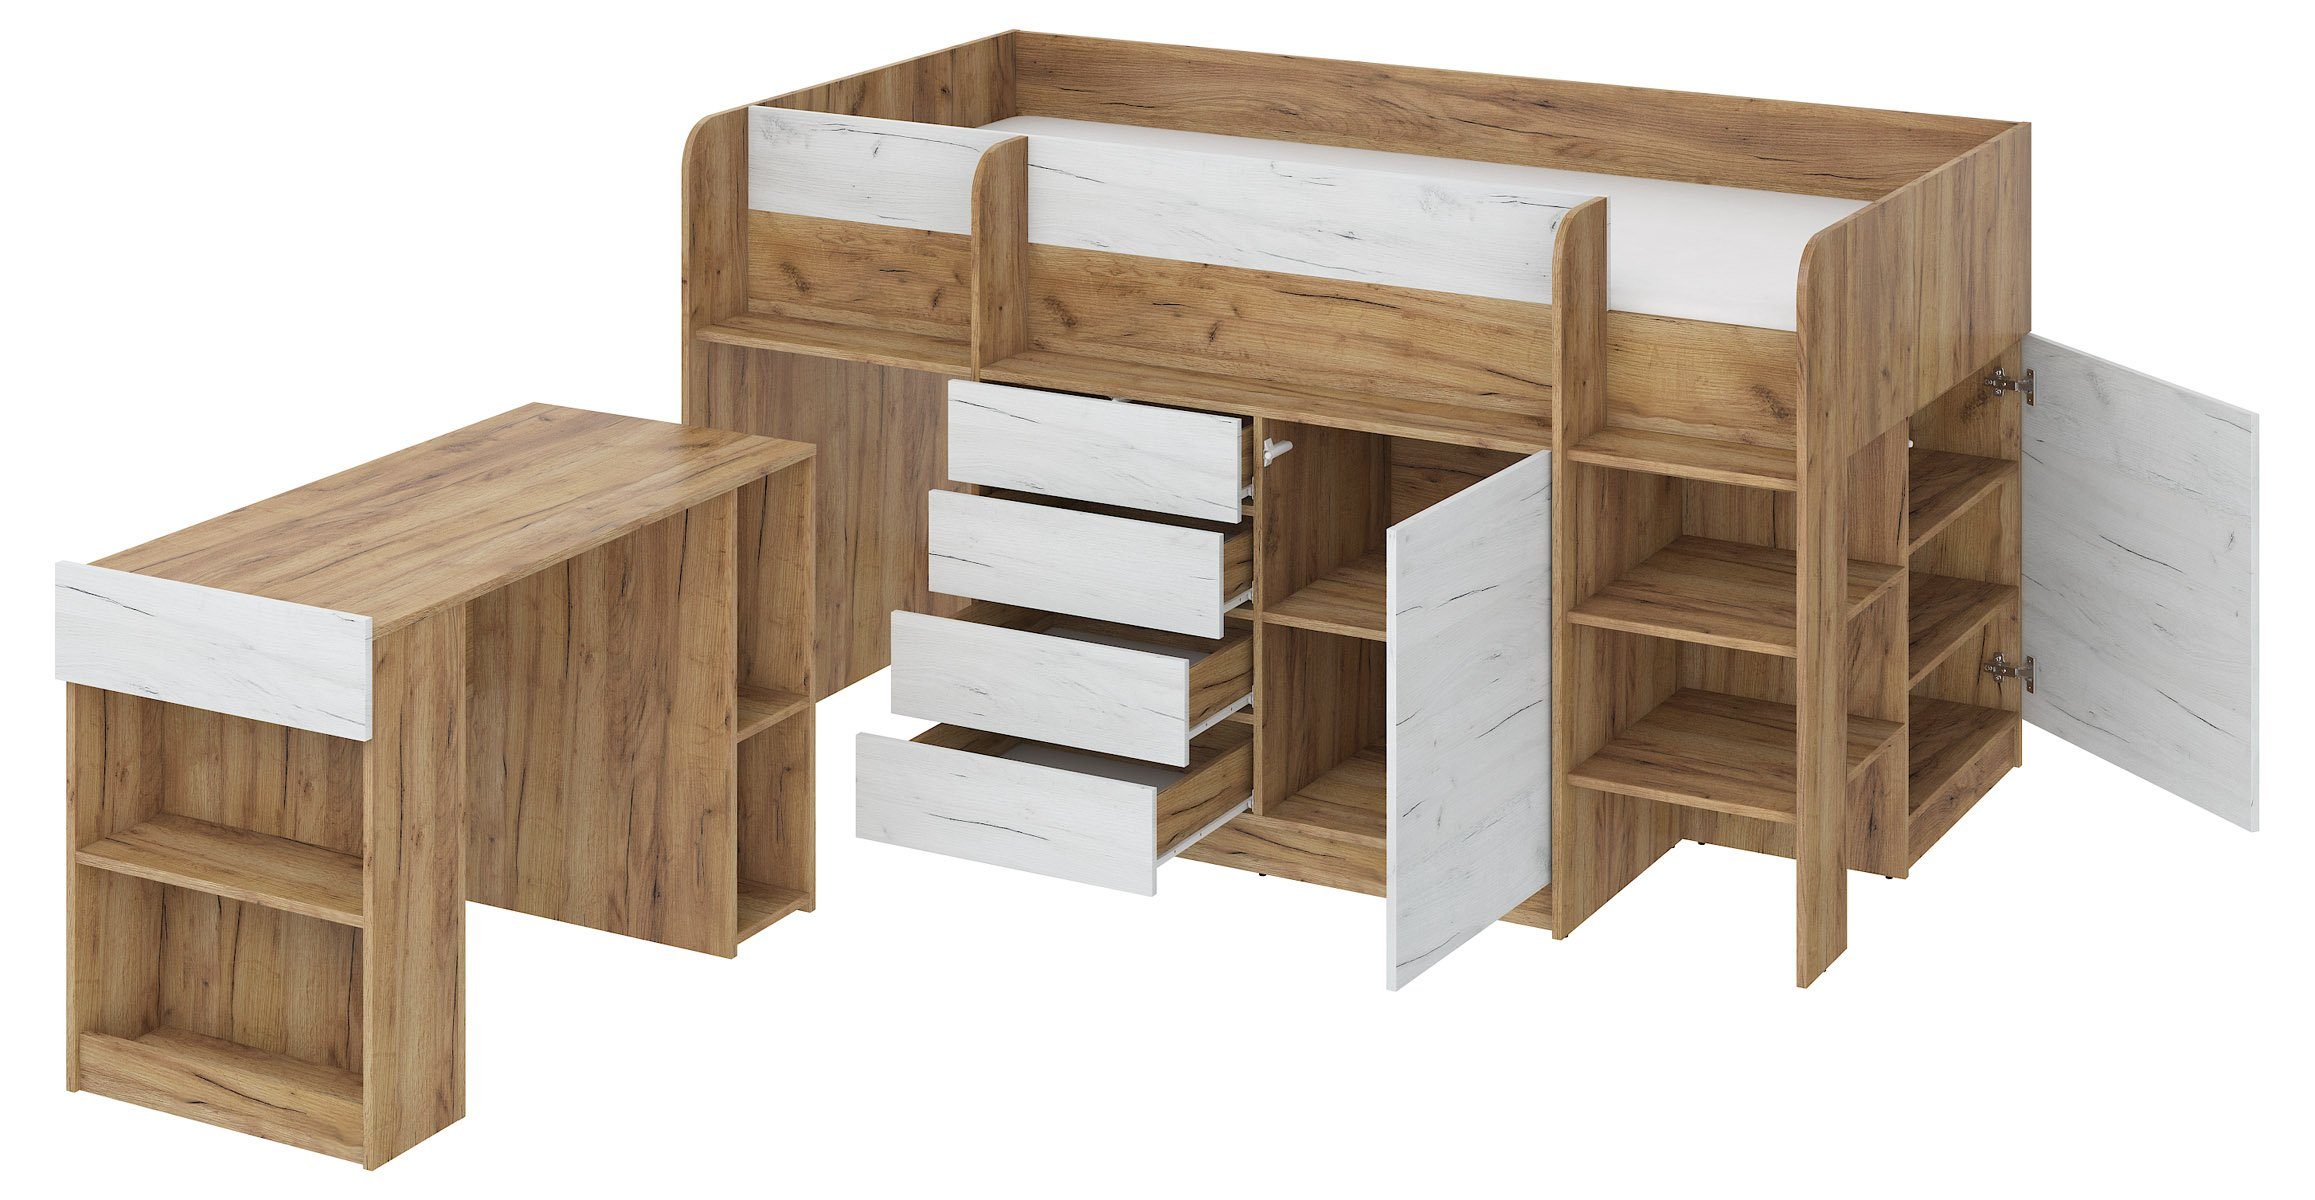 Breite und Hochbett integrierten Domando Hochbett mit Schränken, Weiß Eiche Sondrio Schreibtisch und 204cm, Eiche Gold Regal